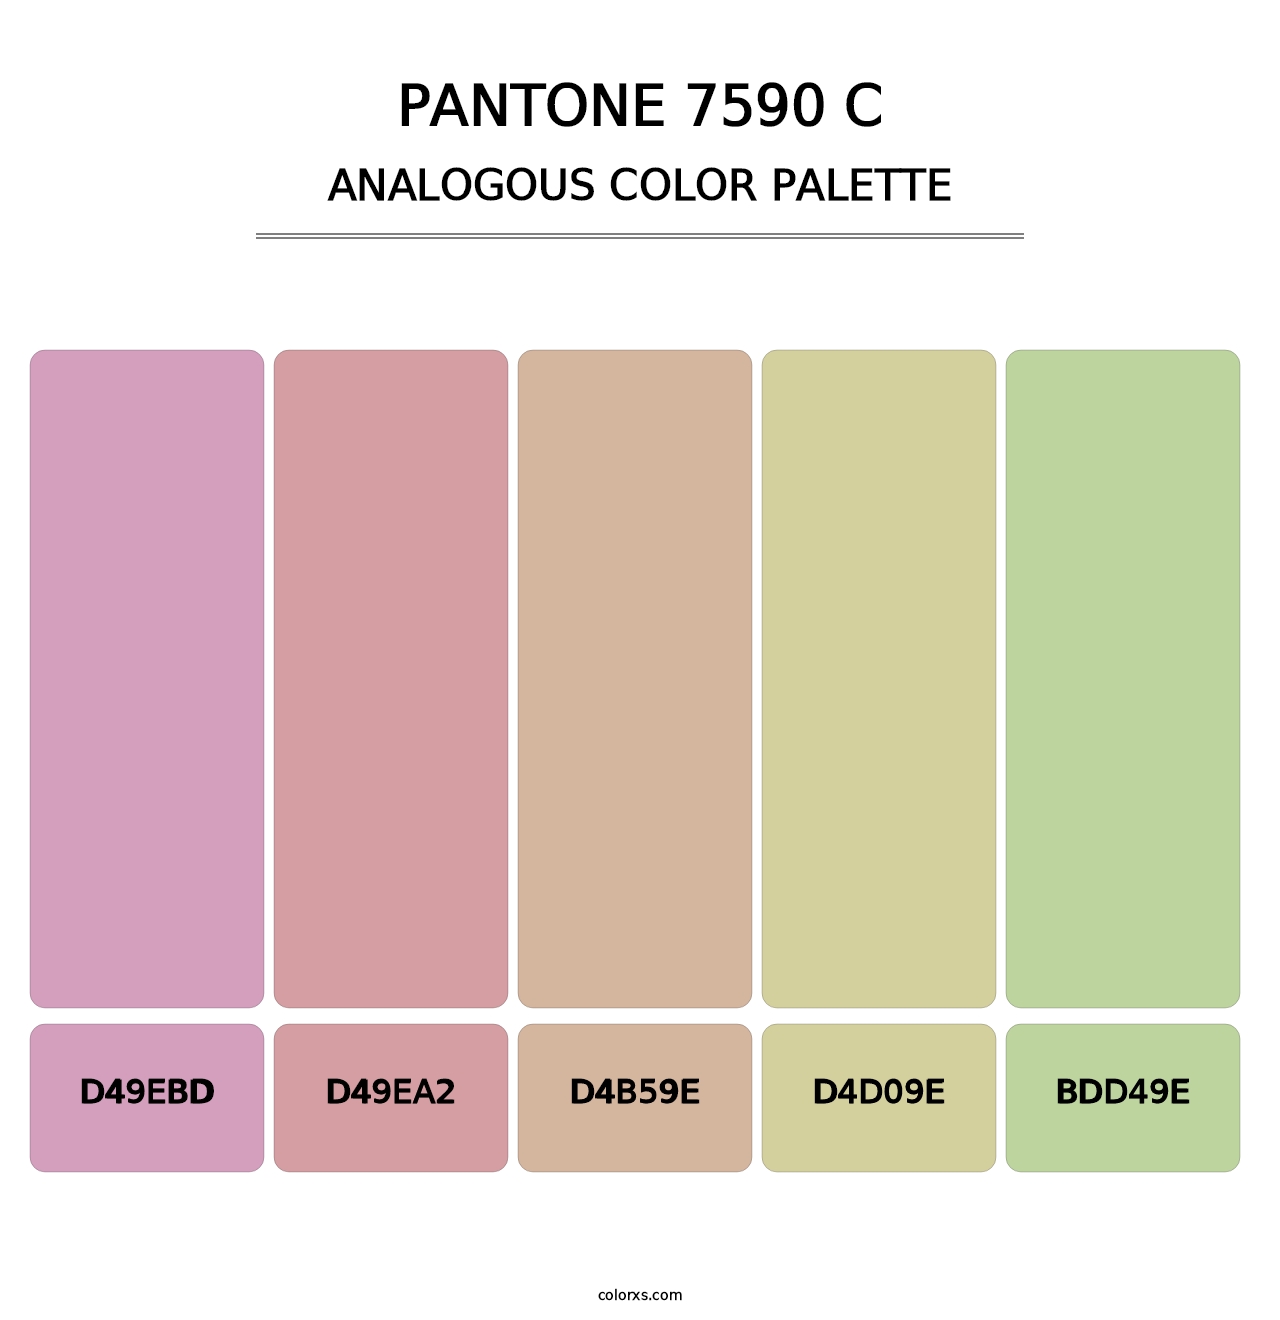 PANTONE 7590 C - Analogous Color Palette